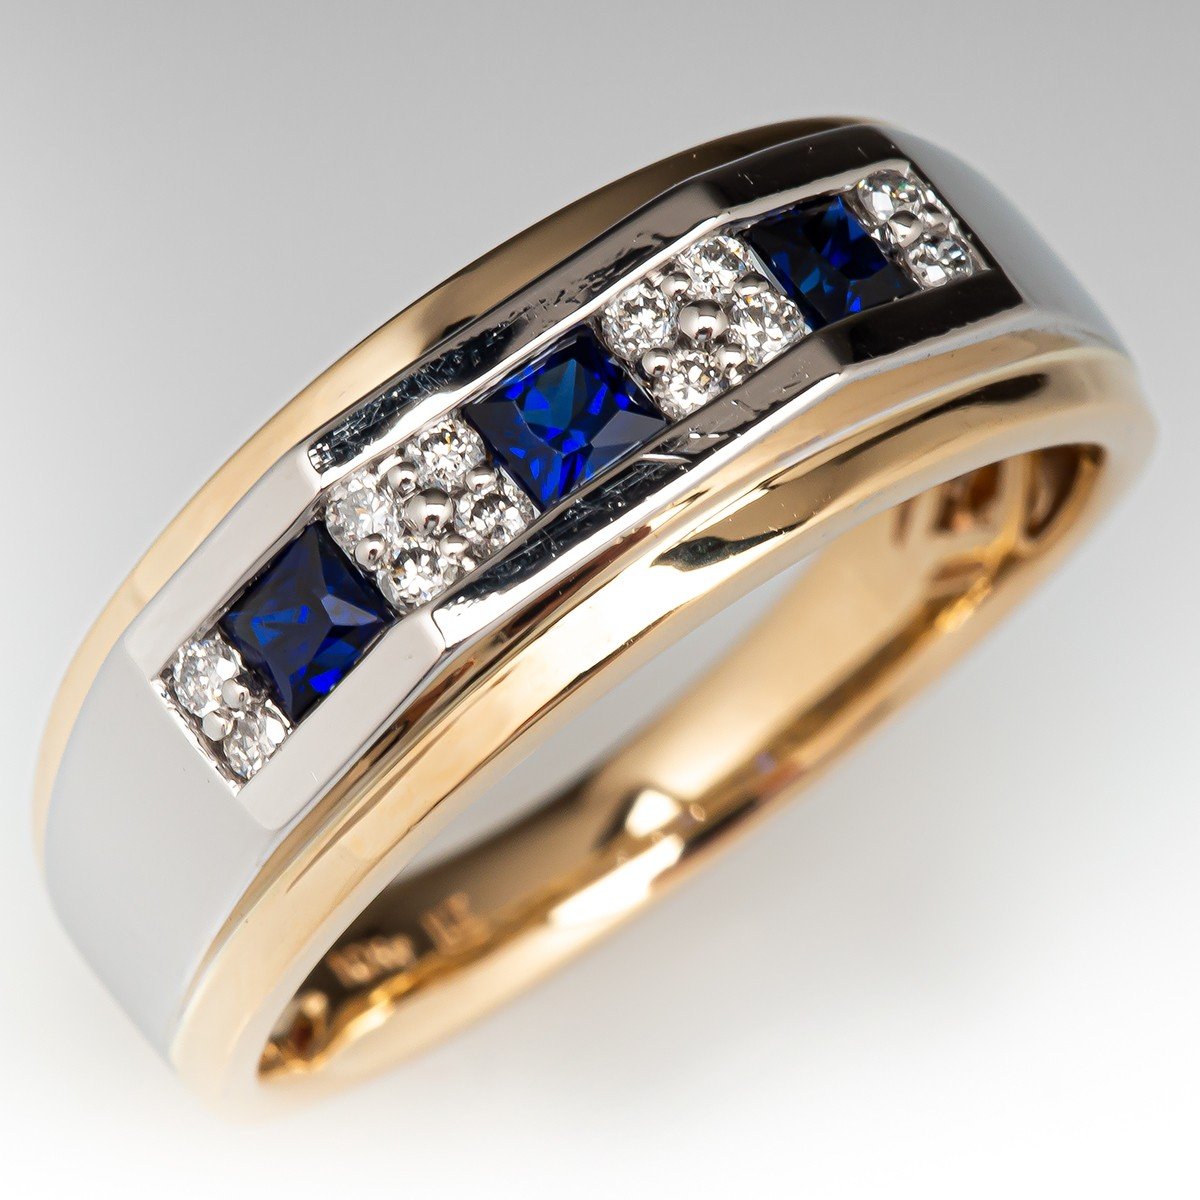 RARE 10 CT STUNNING BLUE MOISSANITE DIAMOND HEAVY MEN'S RING IN 925 SILVER  | eBay